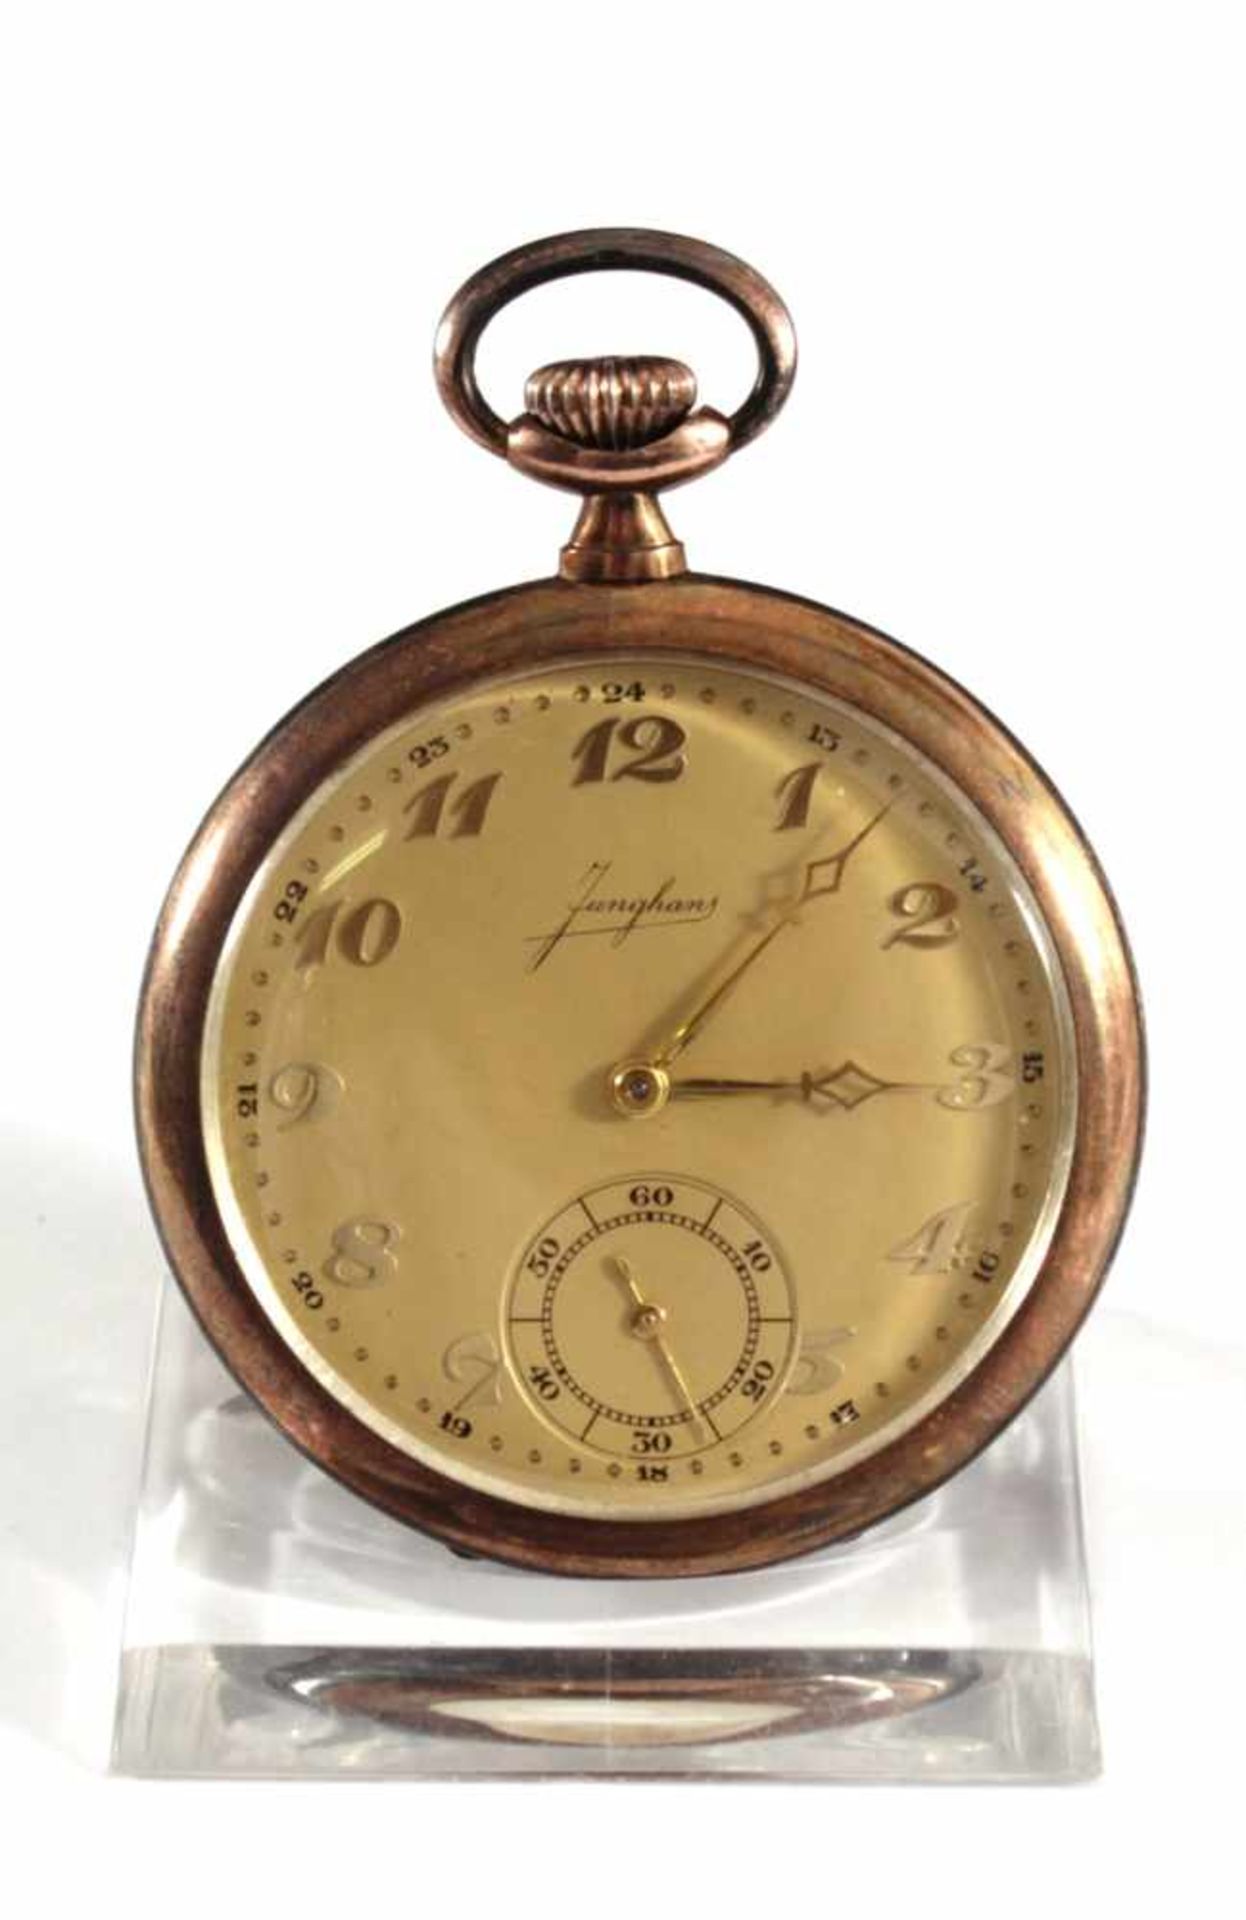 Silberne Junghans TaschenuhrIm Uhrendeckel gemarkt und nummeriert 641591, GoldfarbenesZifferblatt